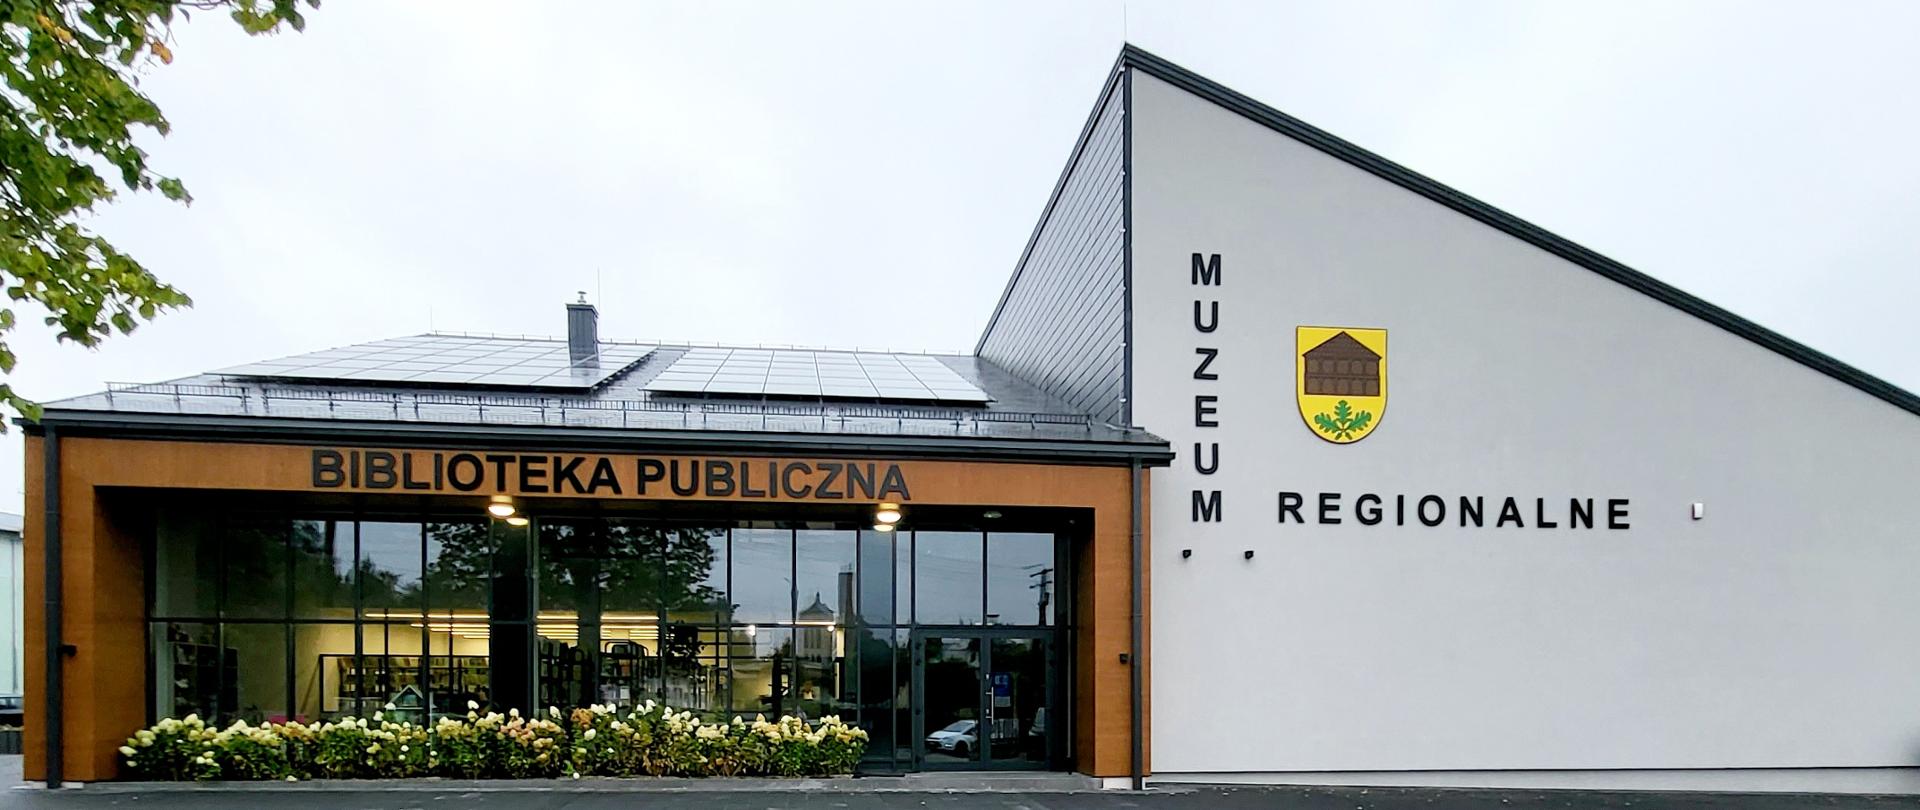 Biblioteka i muzeum regionalne w Górznie